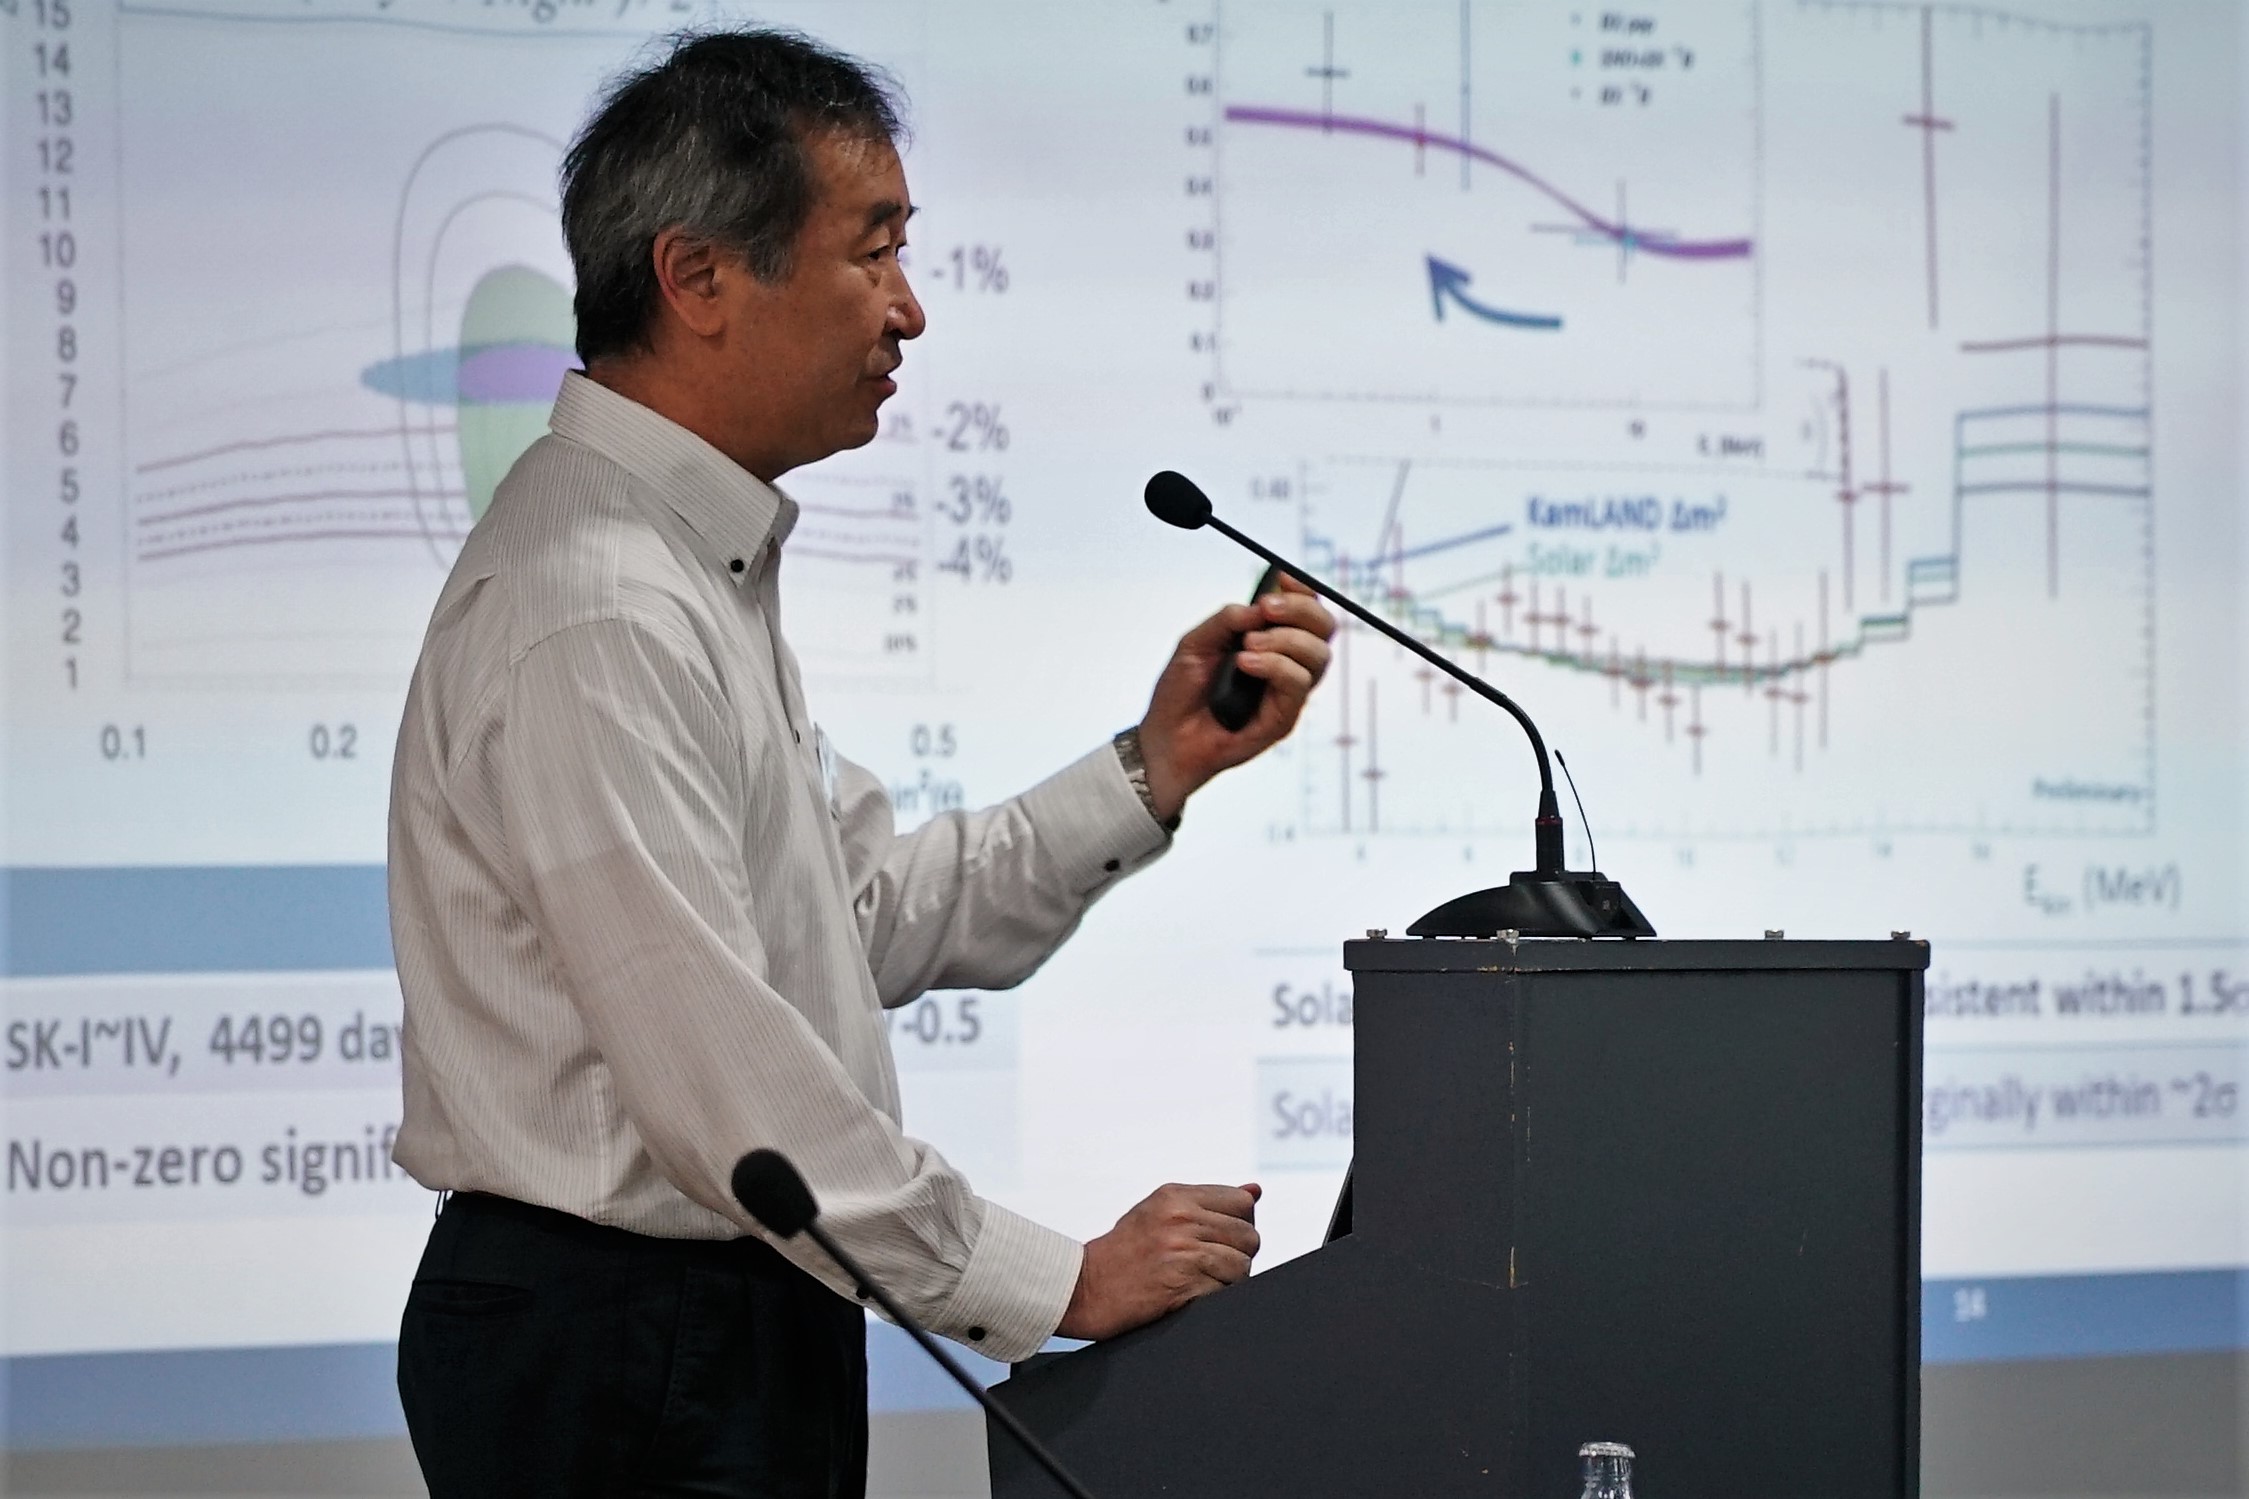 Takaaki Kajita, premio nobel de Física en 2015, durante su intervención en el simposio "Frontiers of Astroparticle Physics" en La Palma. Crédito: Iván Jiménez (IAC).